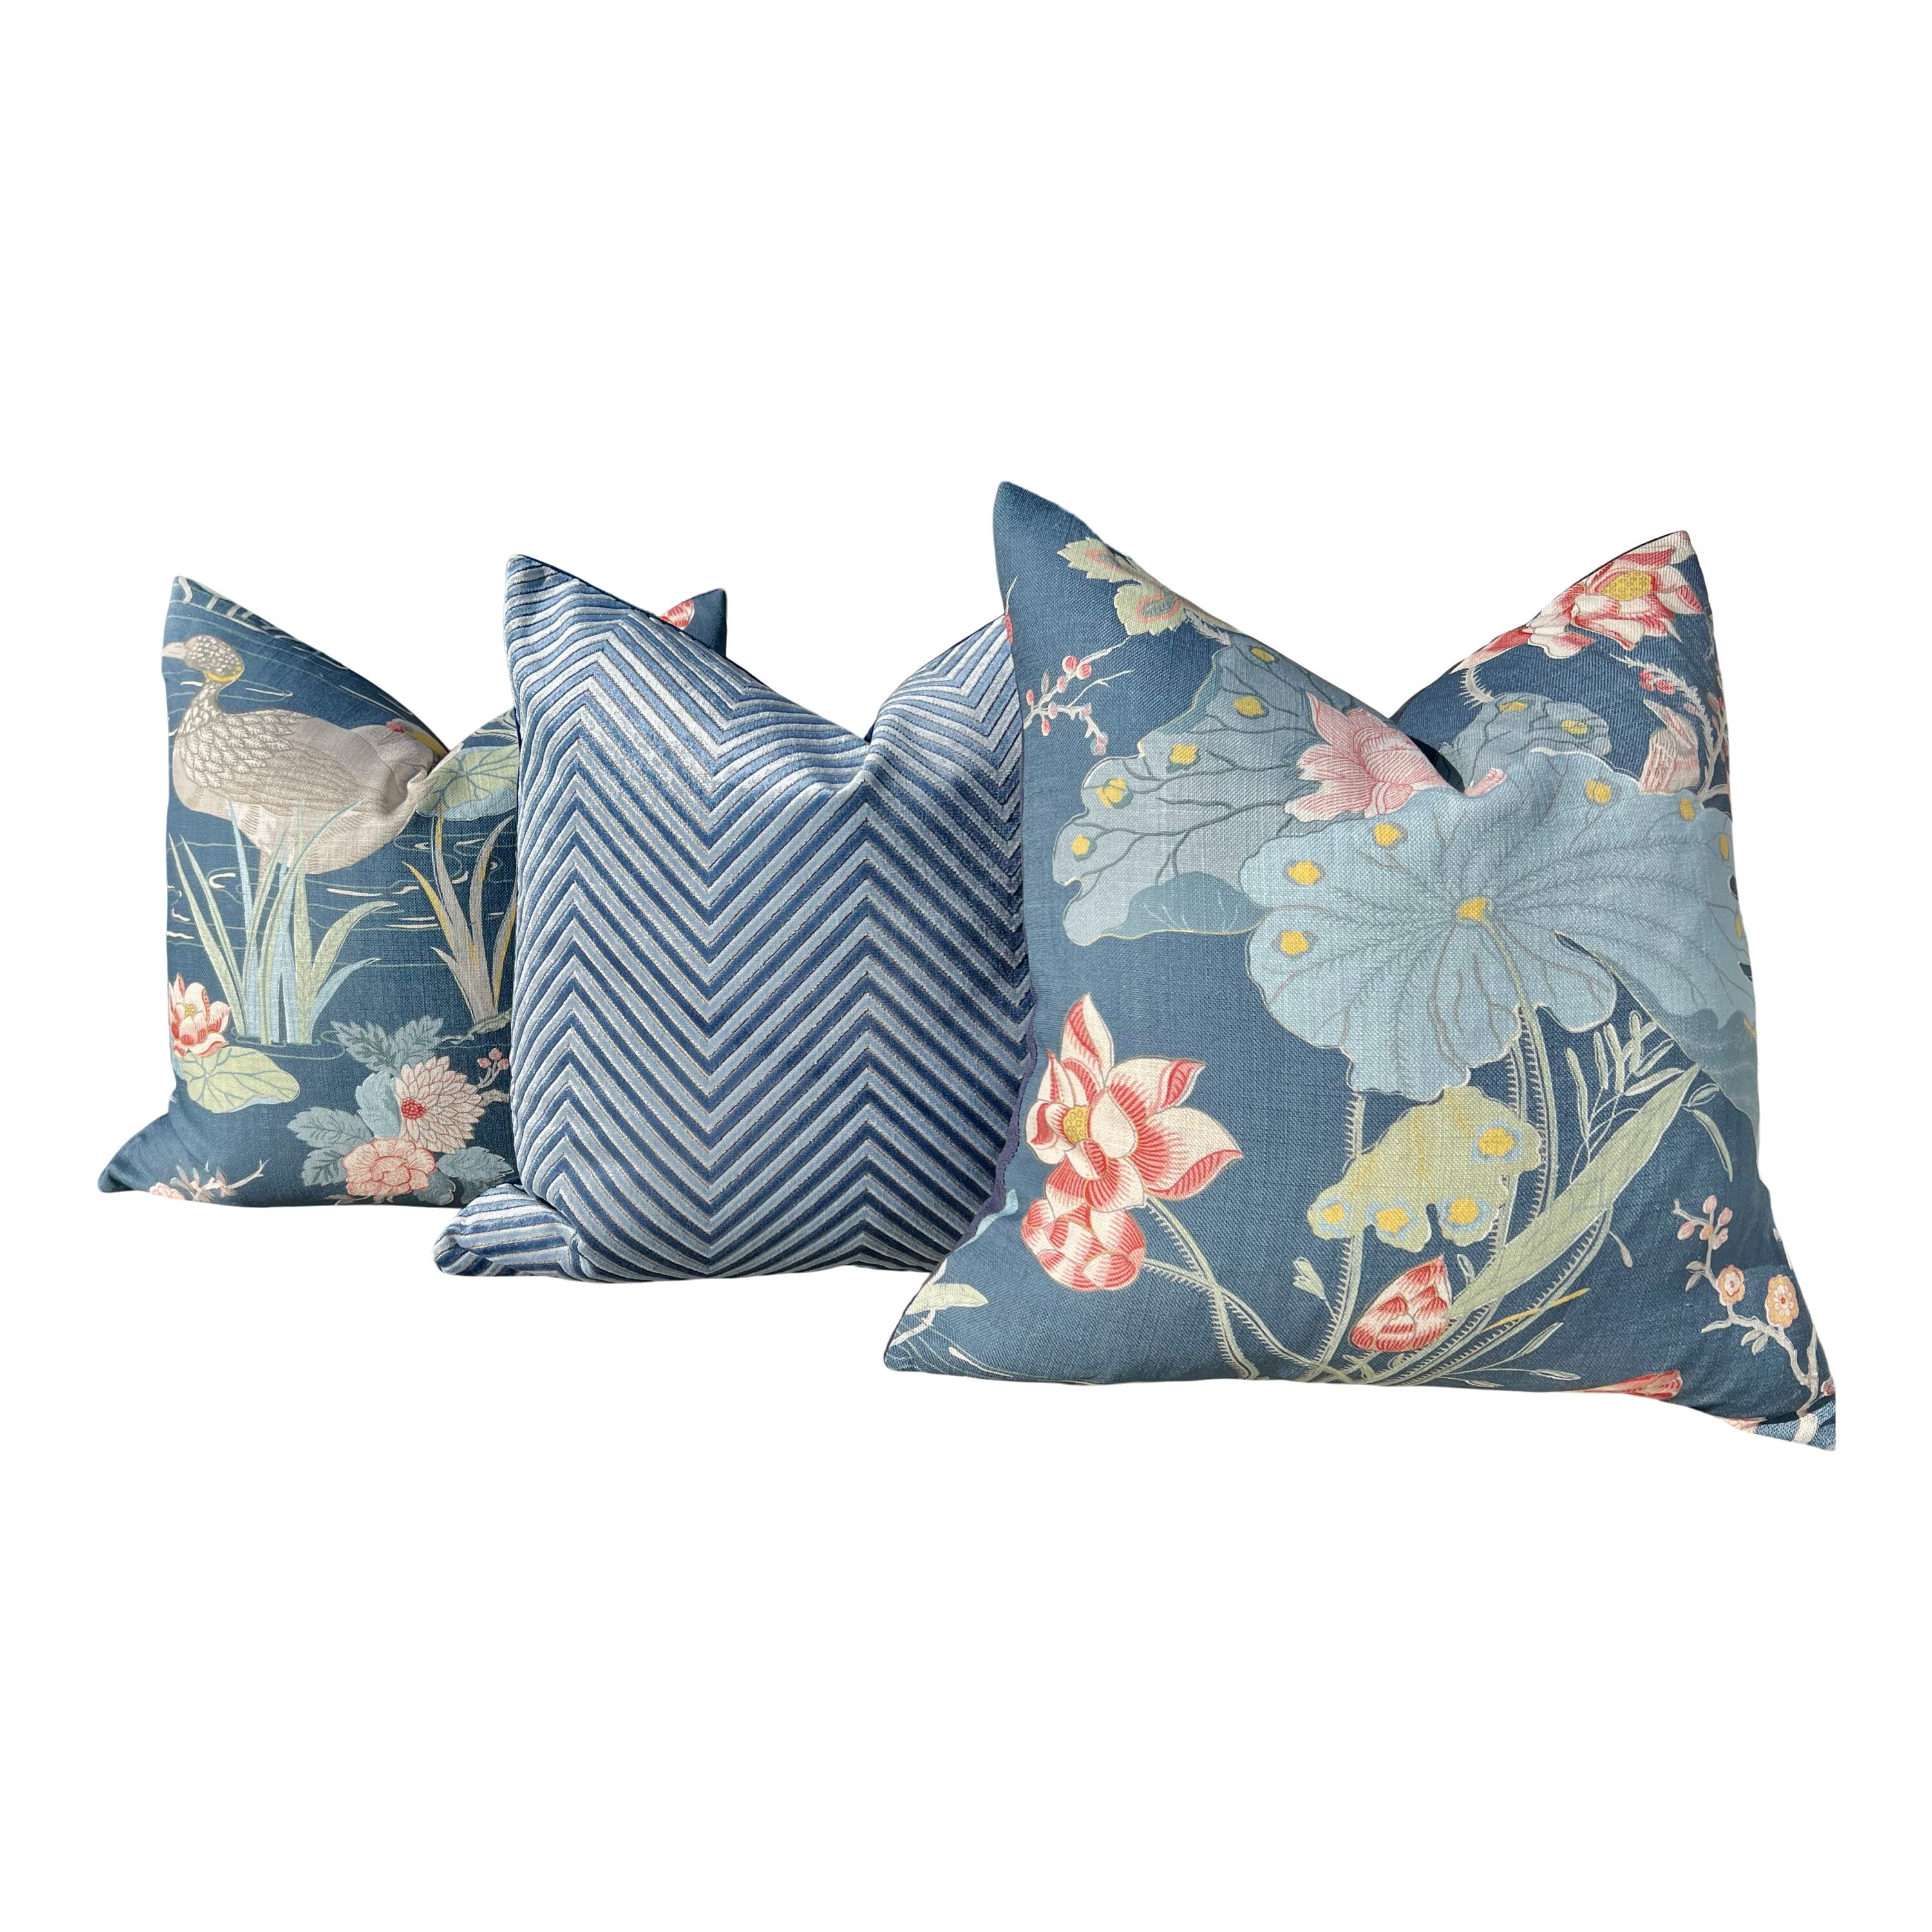 Lee Jofa Luzon Pillow in Sapphire. Linen Blue Pillow Designer Exotic Bird Pillows, Luxury Botanical Pillow, euro Sham Linen Cover 26x26